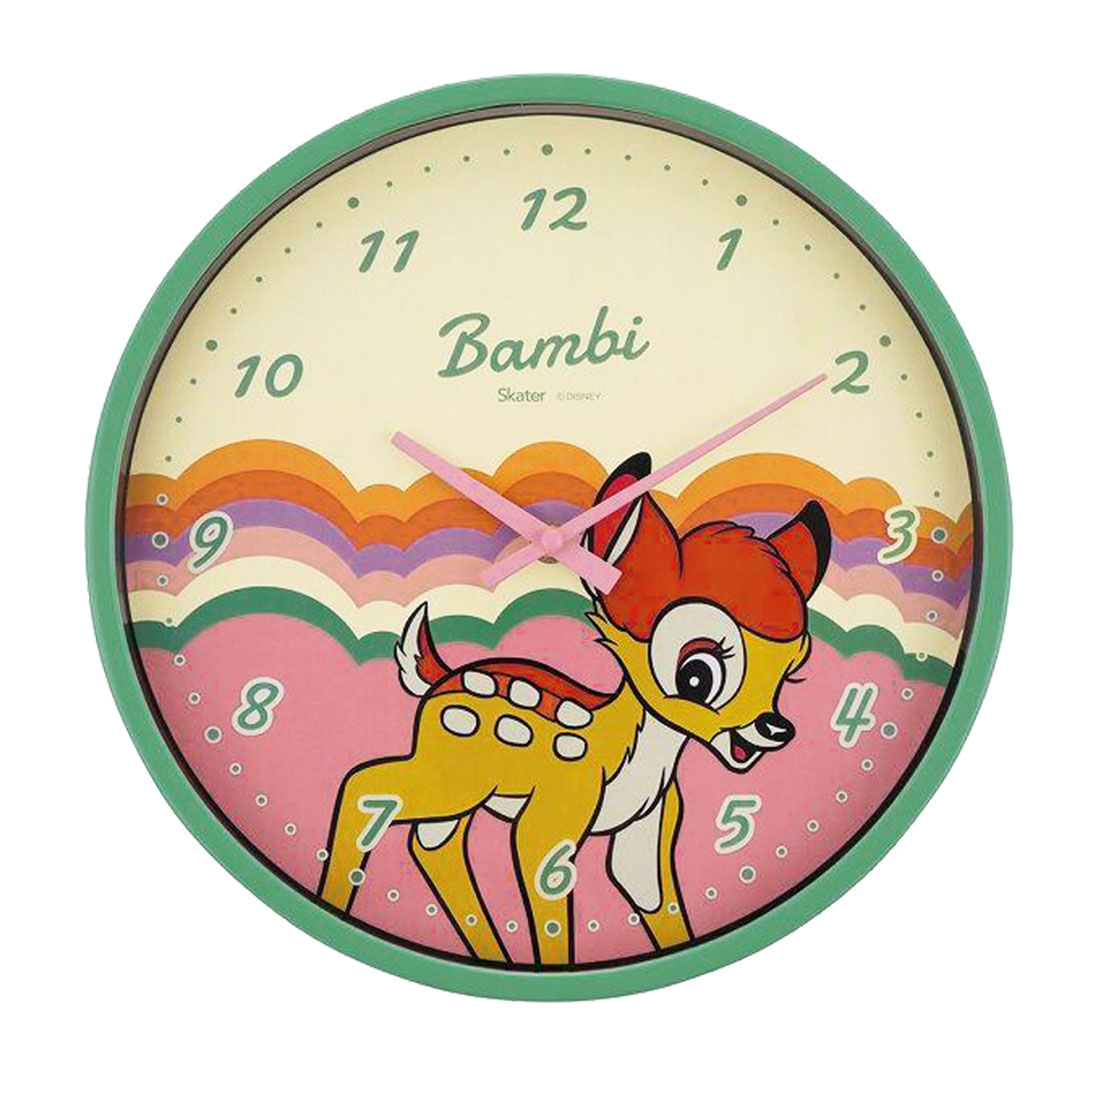 壁掛け時計 ディズニー レトロ かわいい おしゃれ Disney 時計 子供 ミッキー ミニー チップ&デール くまのプーさん バンビ ルーイ  デューイ ヒューイ